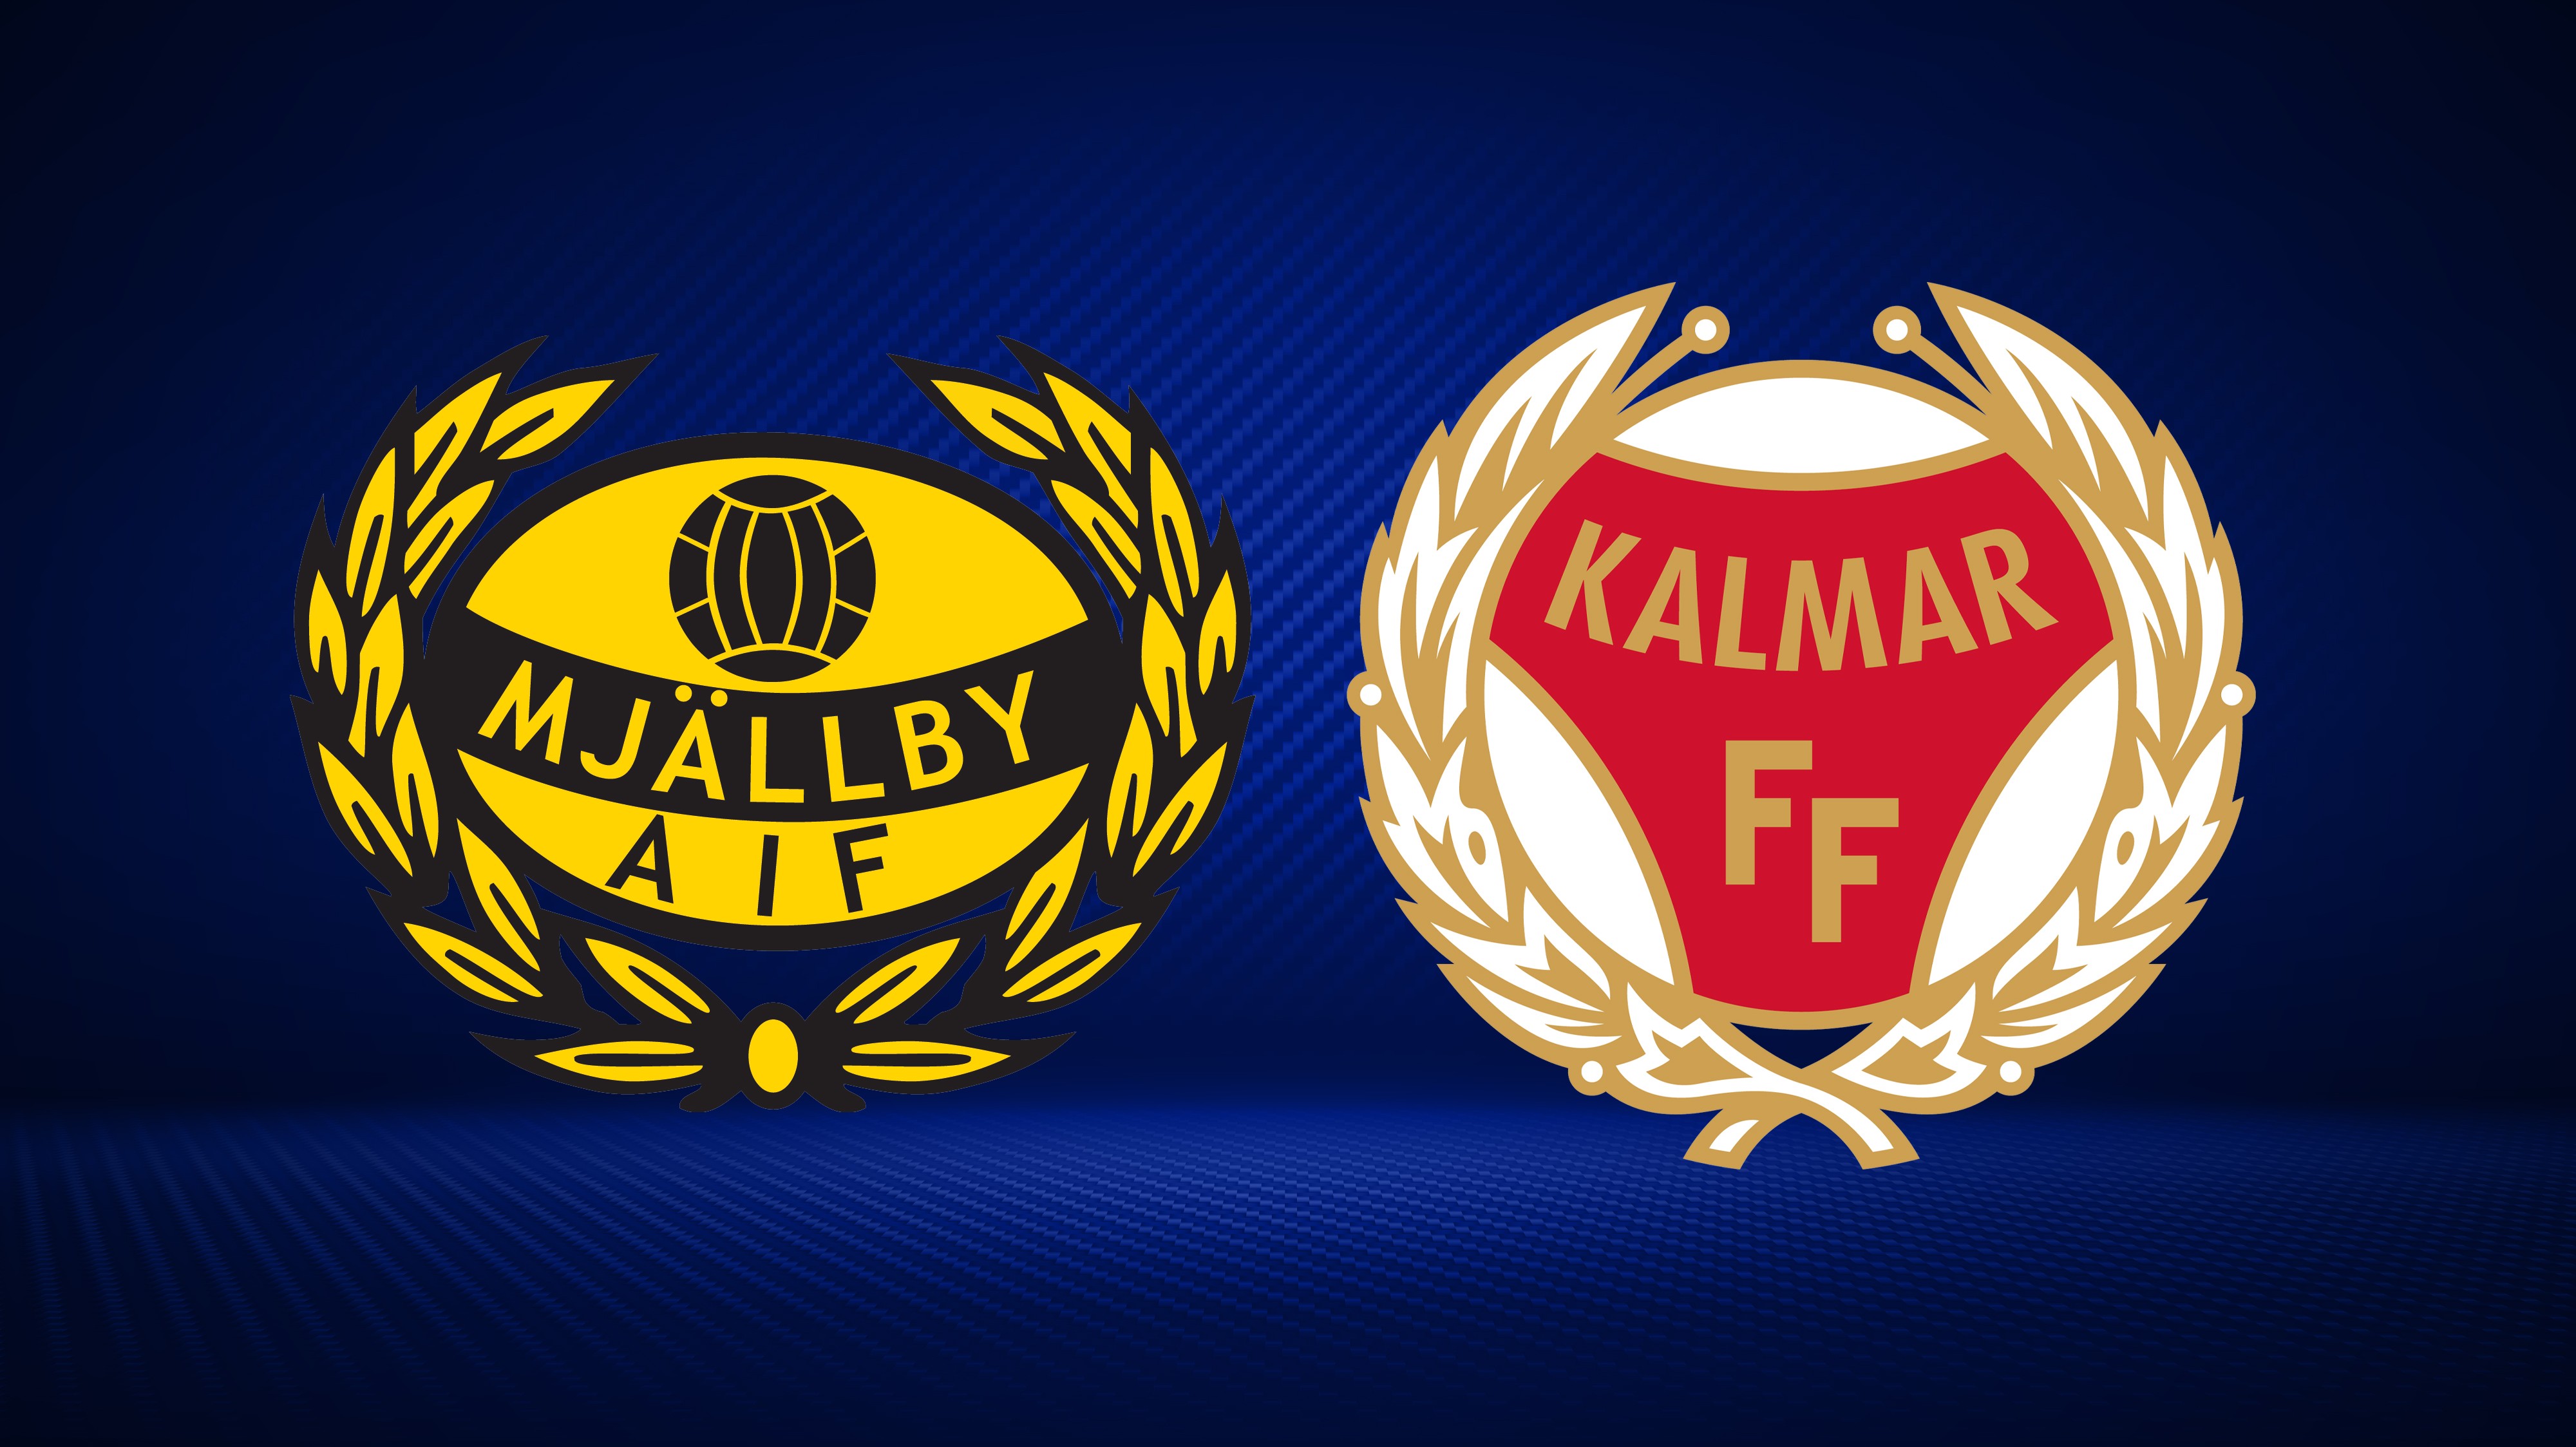 Höjdpunkter: Mjällby AIF - Kalmar FF